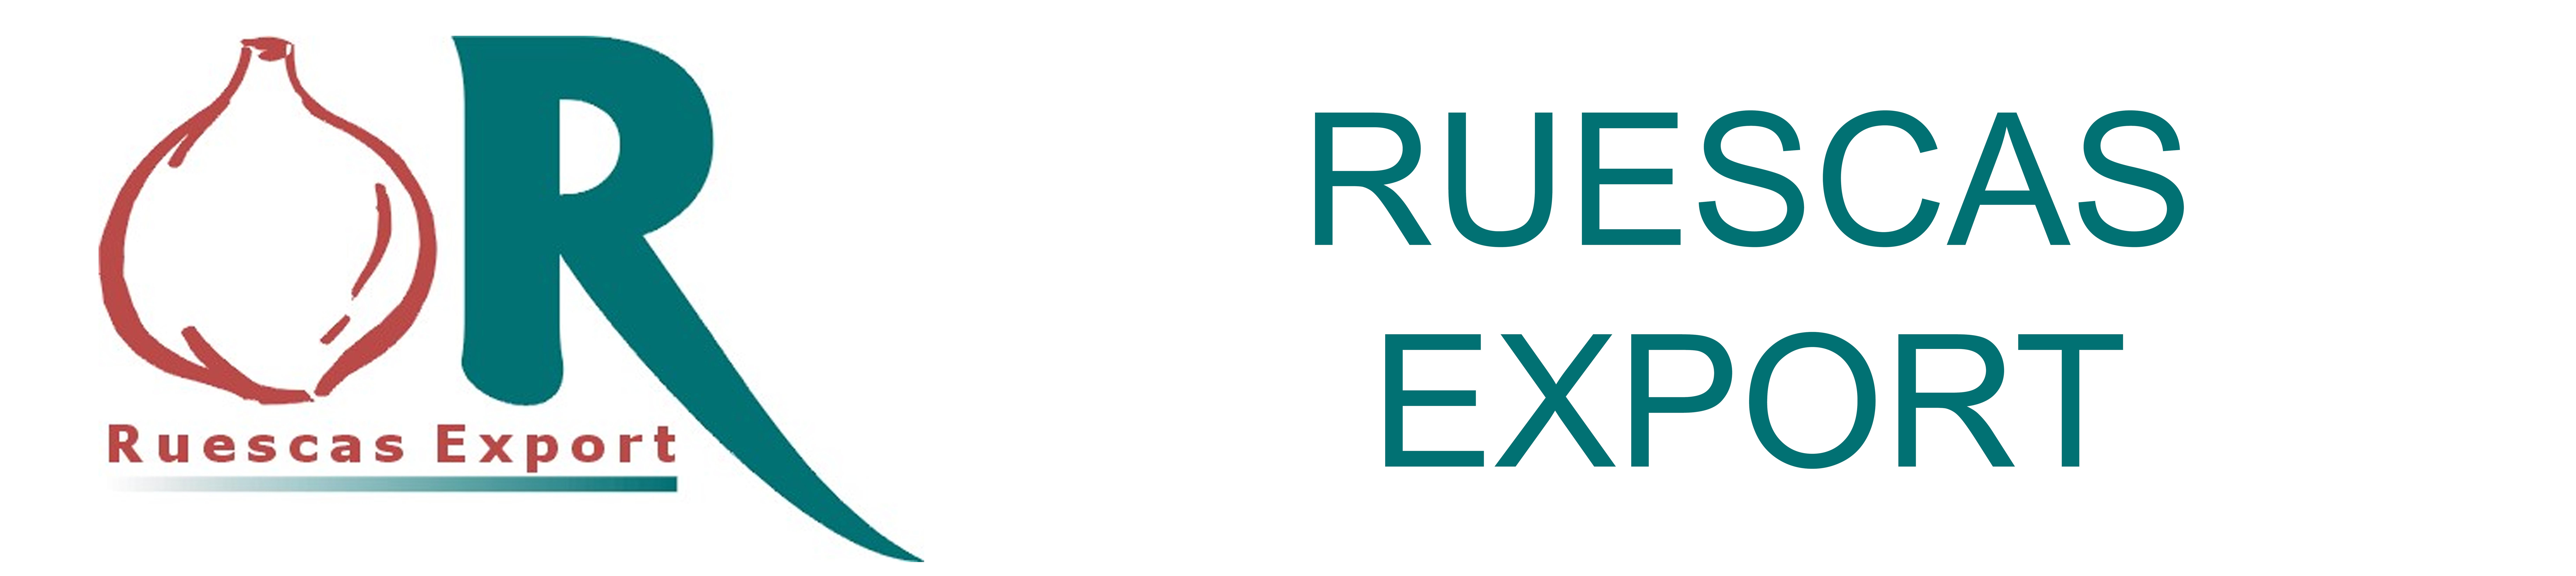 Ruescas-Export